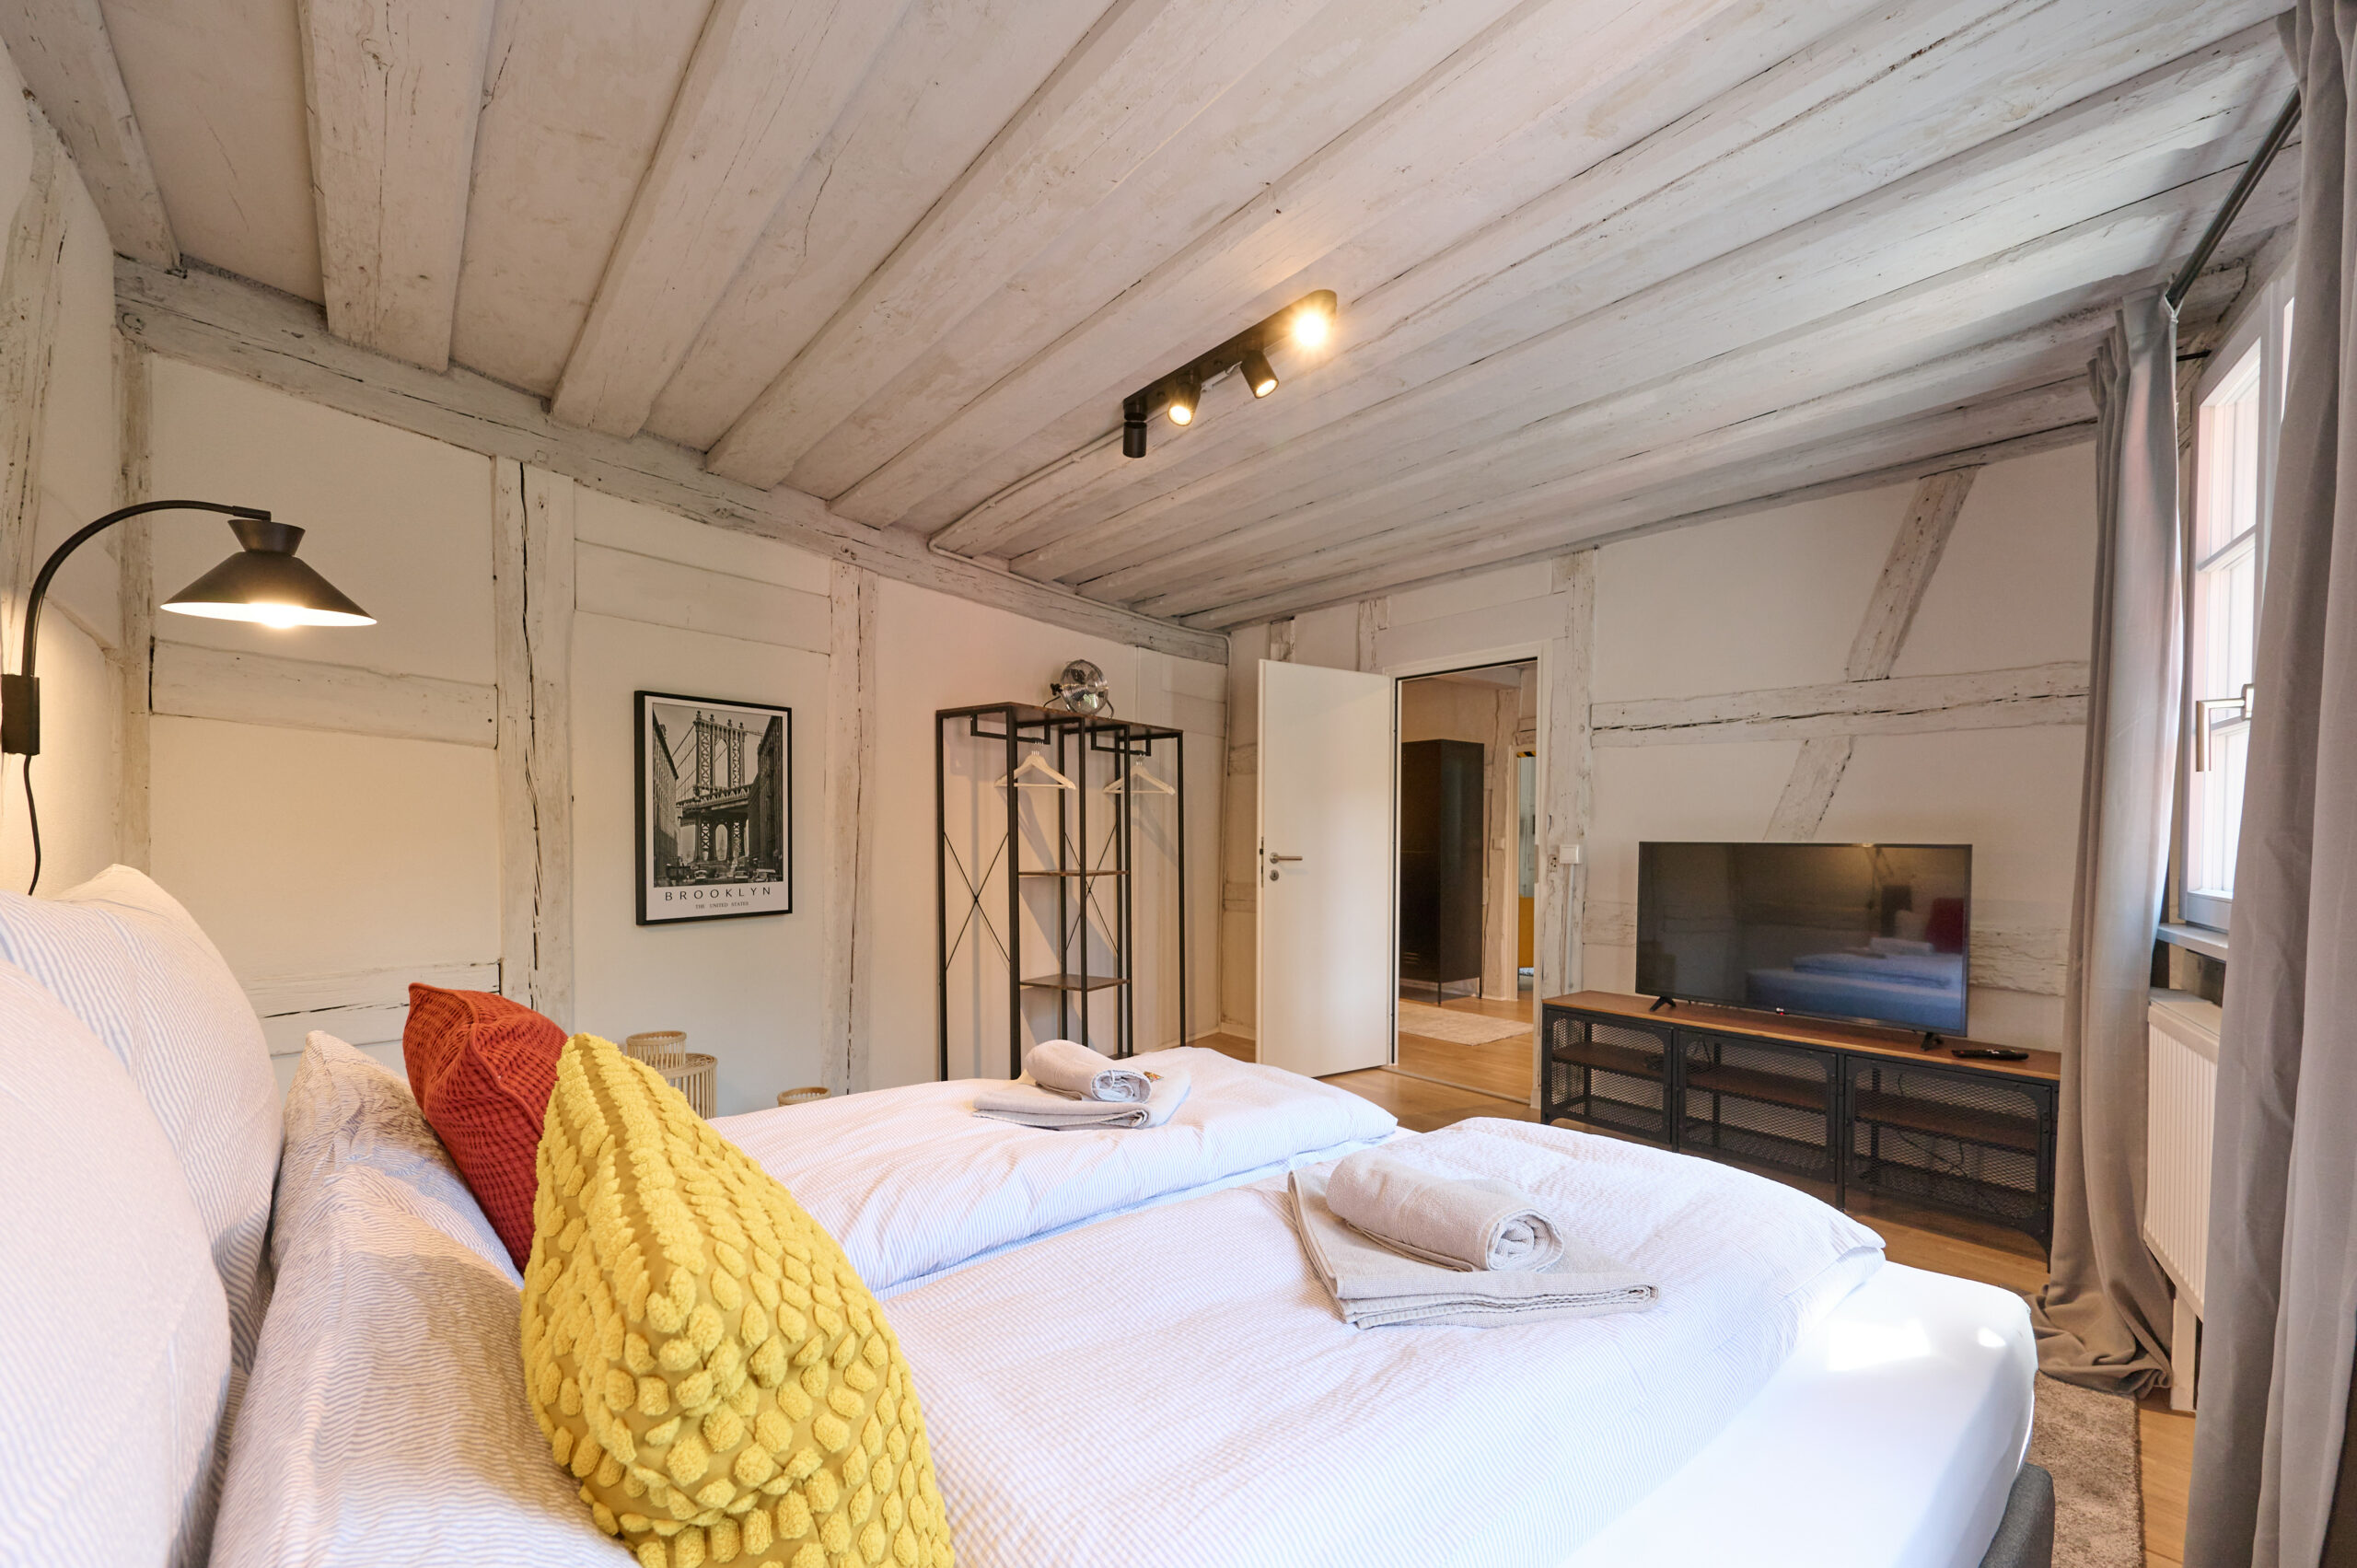 Komfortable Betten für Airbnb-Gäste Designideen für Airbnb-Schlafzimmer